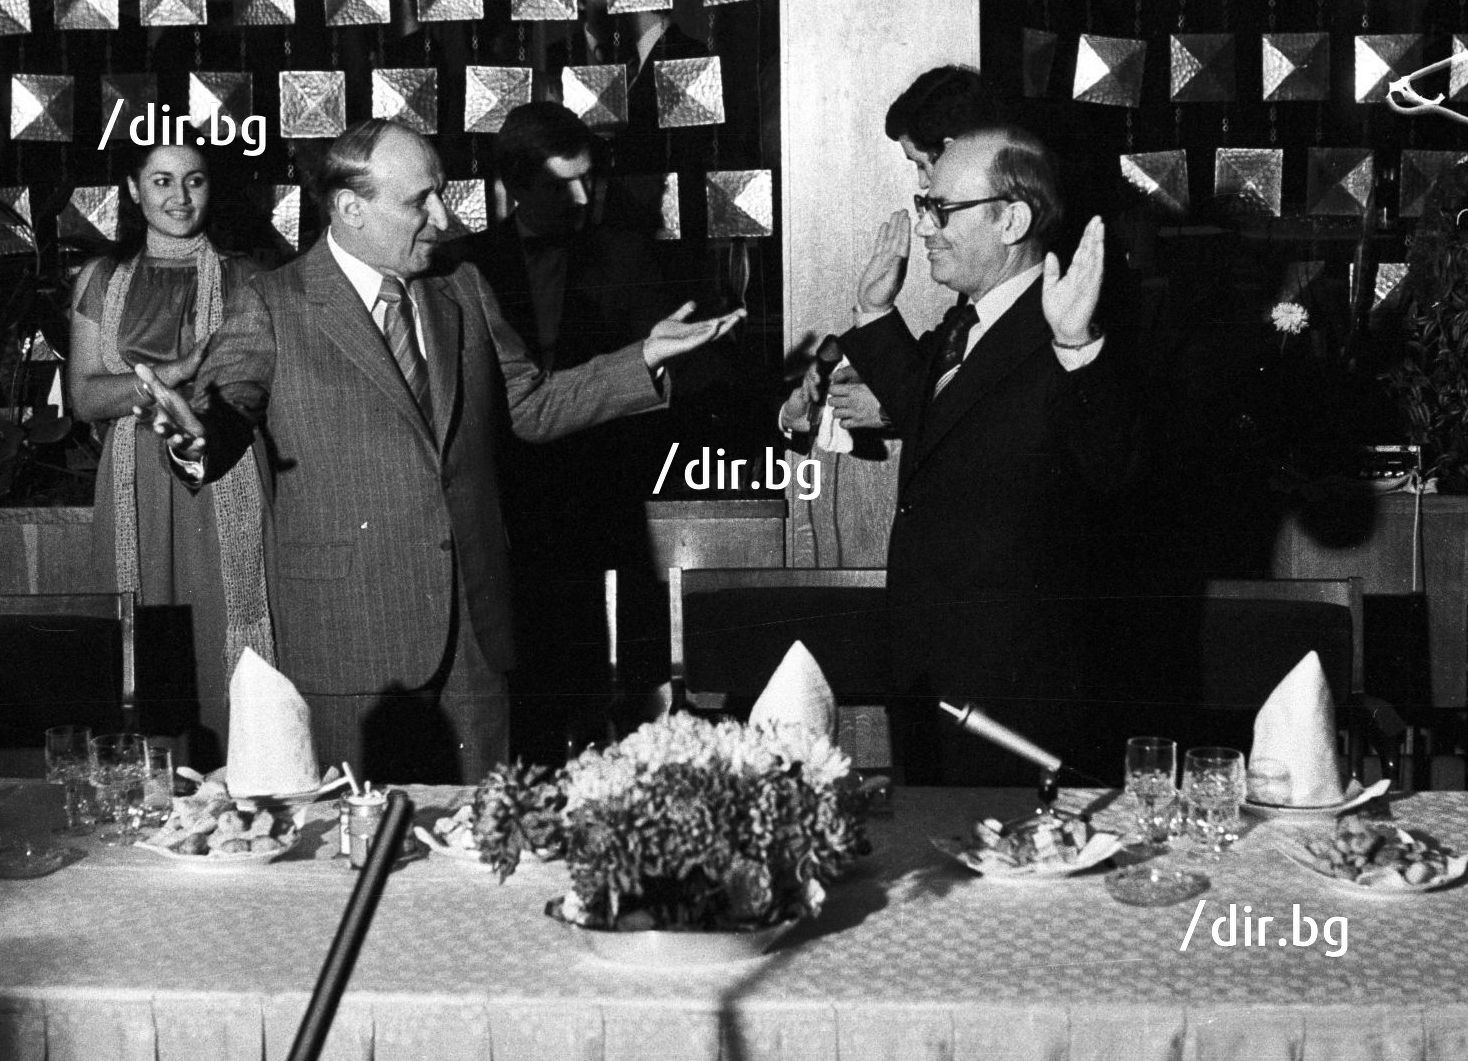 8 ноември 1979 г. Тодор Живков и тогавашният шеф на СБЖ Веселин Йосифов на бала на младите журналисти в хотел "София".